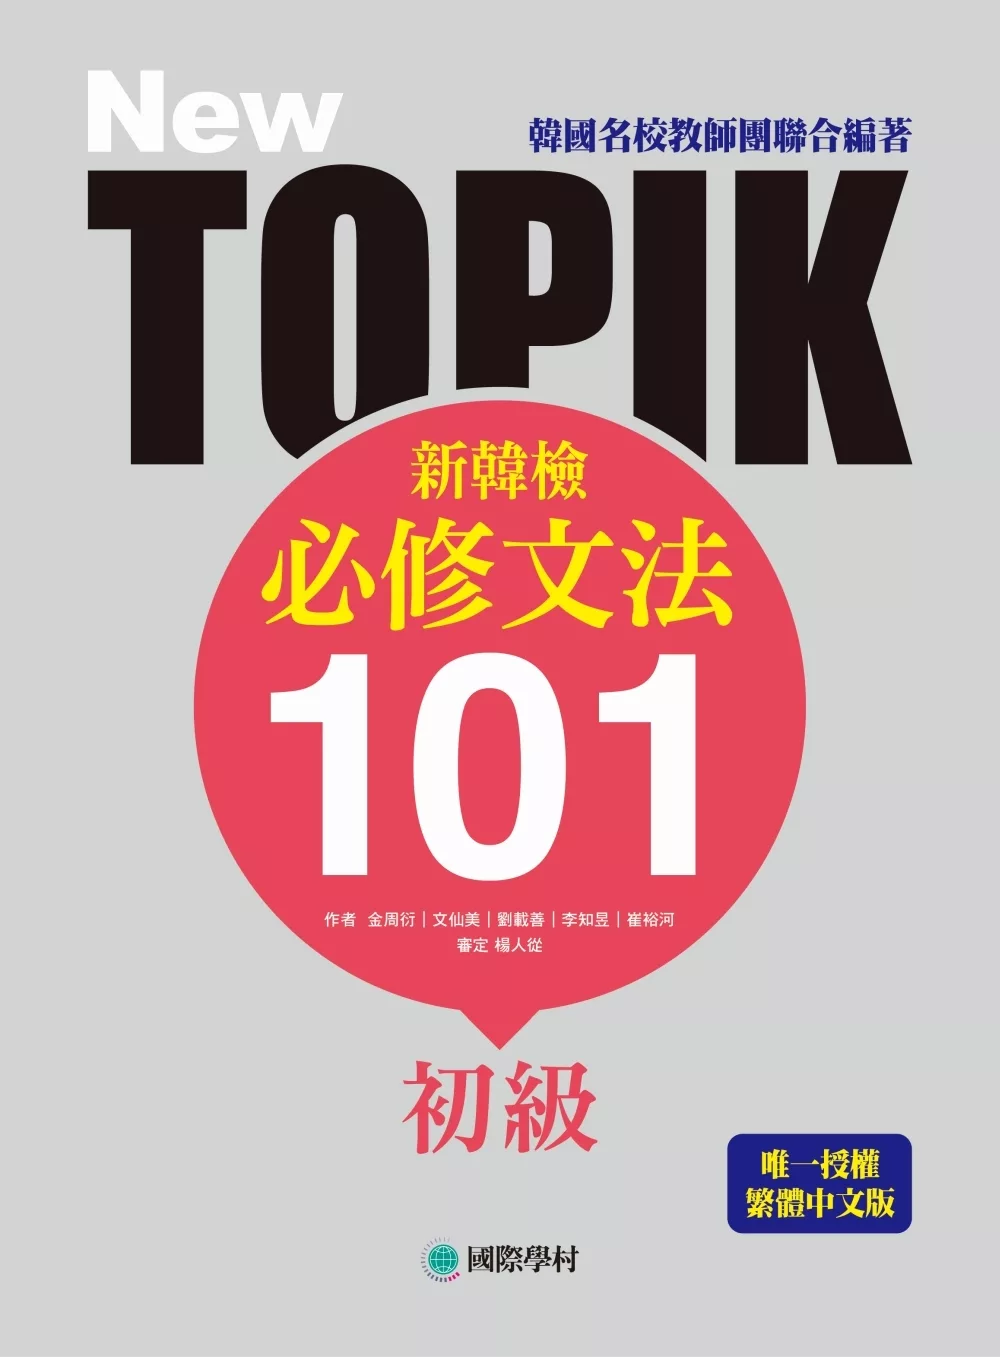 NEW TOPIK 新韓檢初級必修文法101：韓國名校教師團聯合編著！唯一授權繁體中文版！